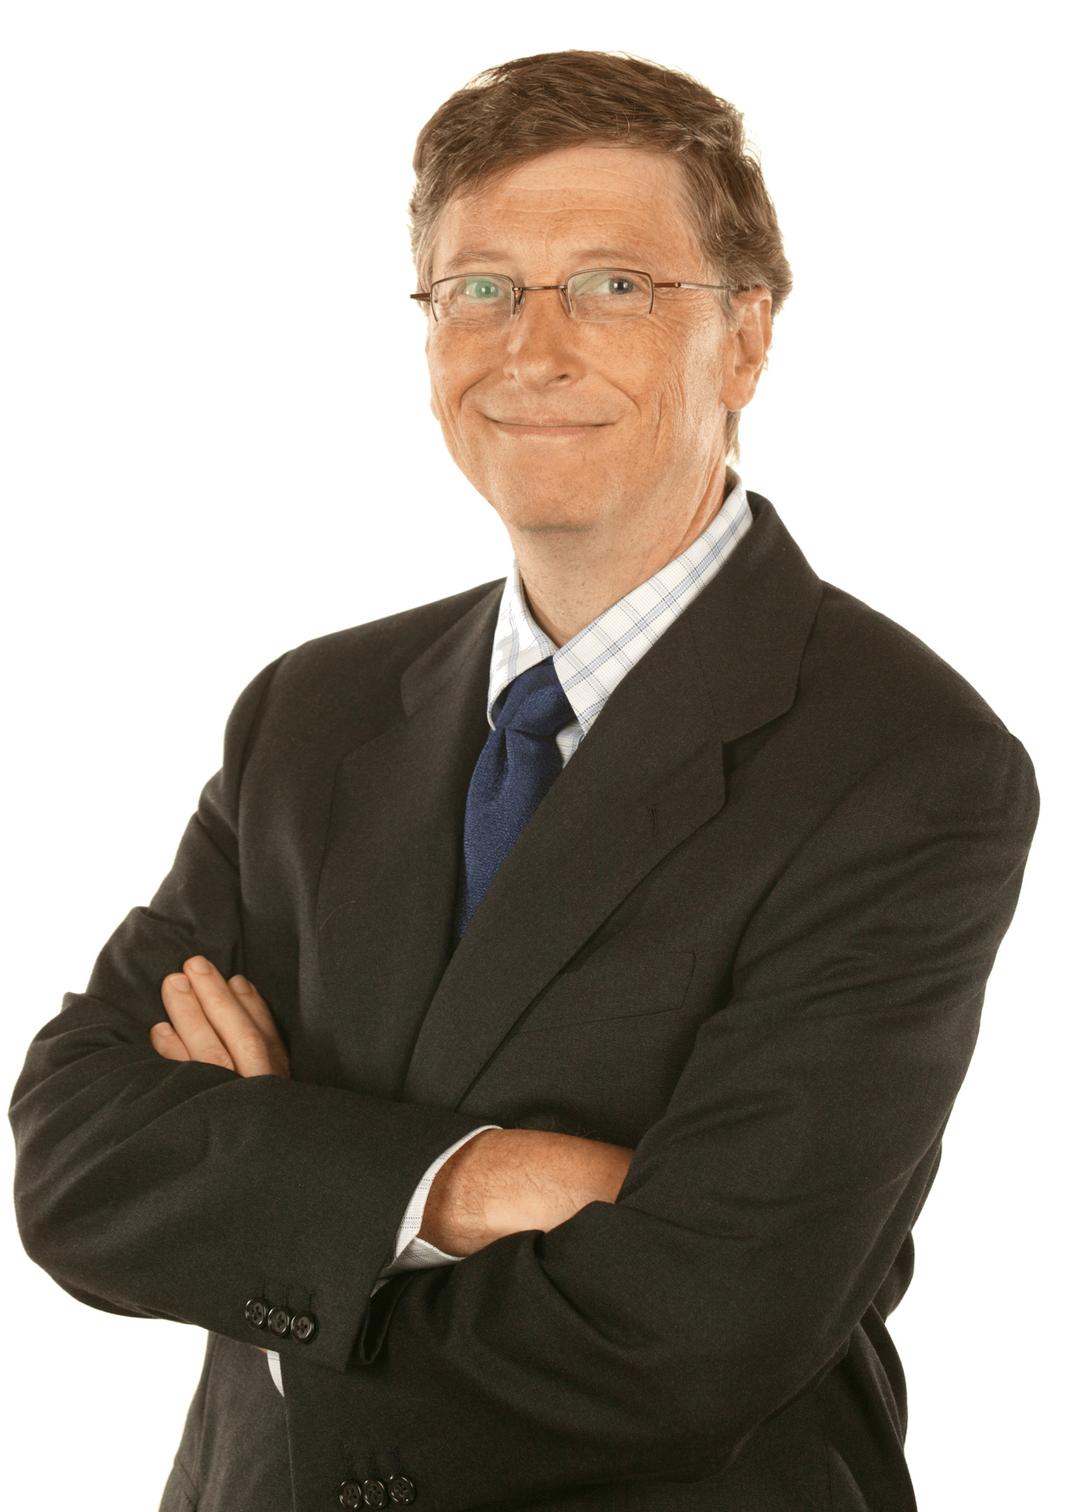 Bill Gates Suit png transparent